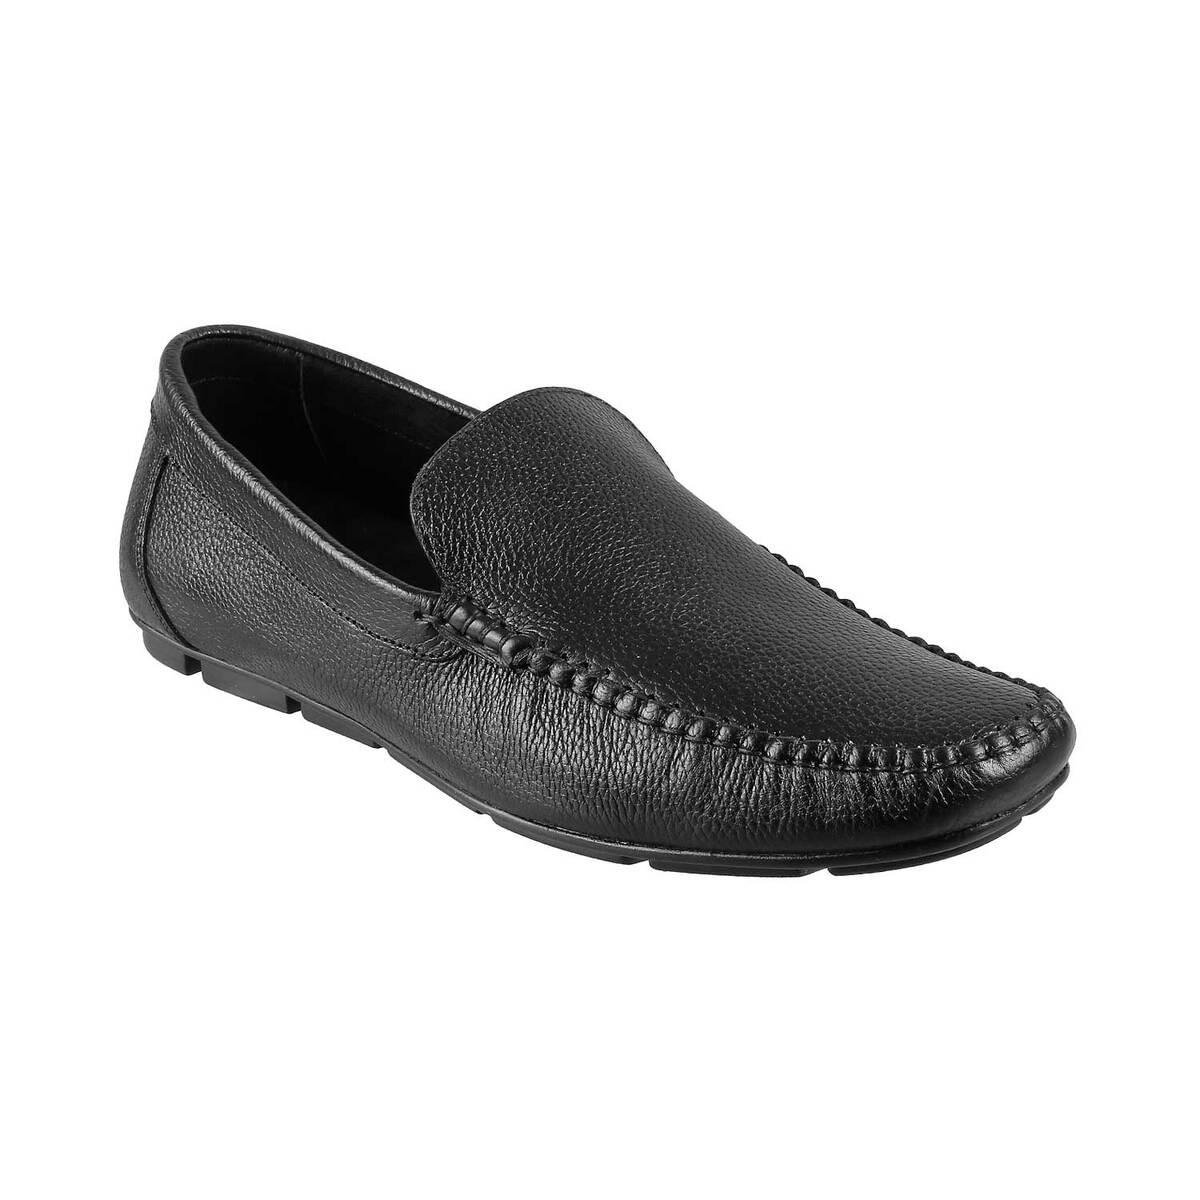 Buy Metro Black Loafers Online | SKU: 19-5513-11-40 - Metro Shoes